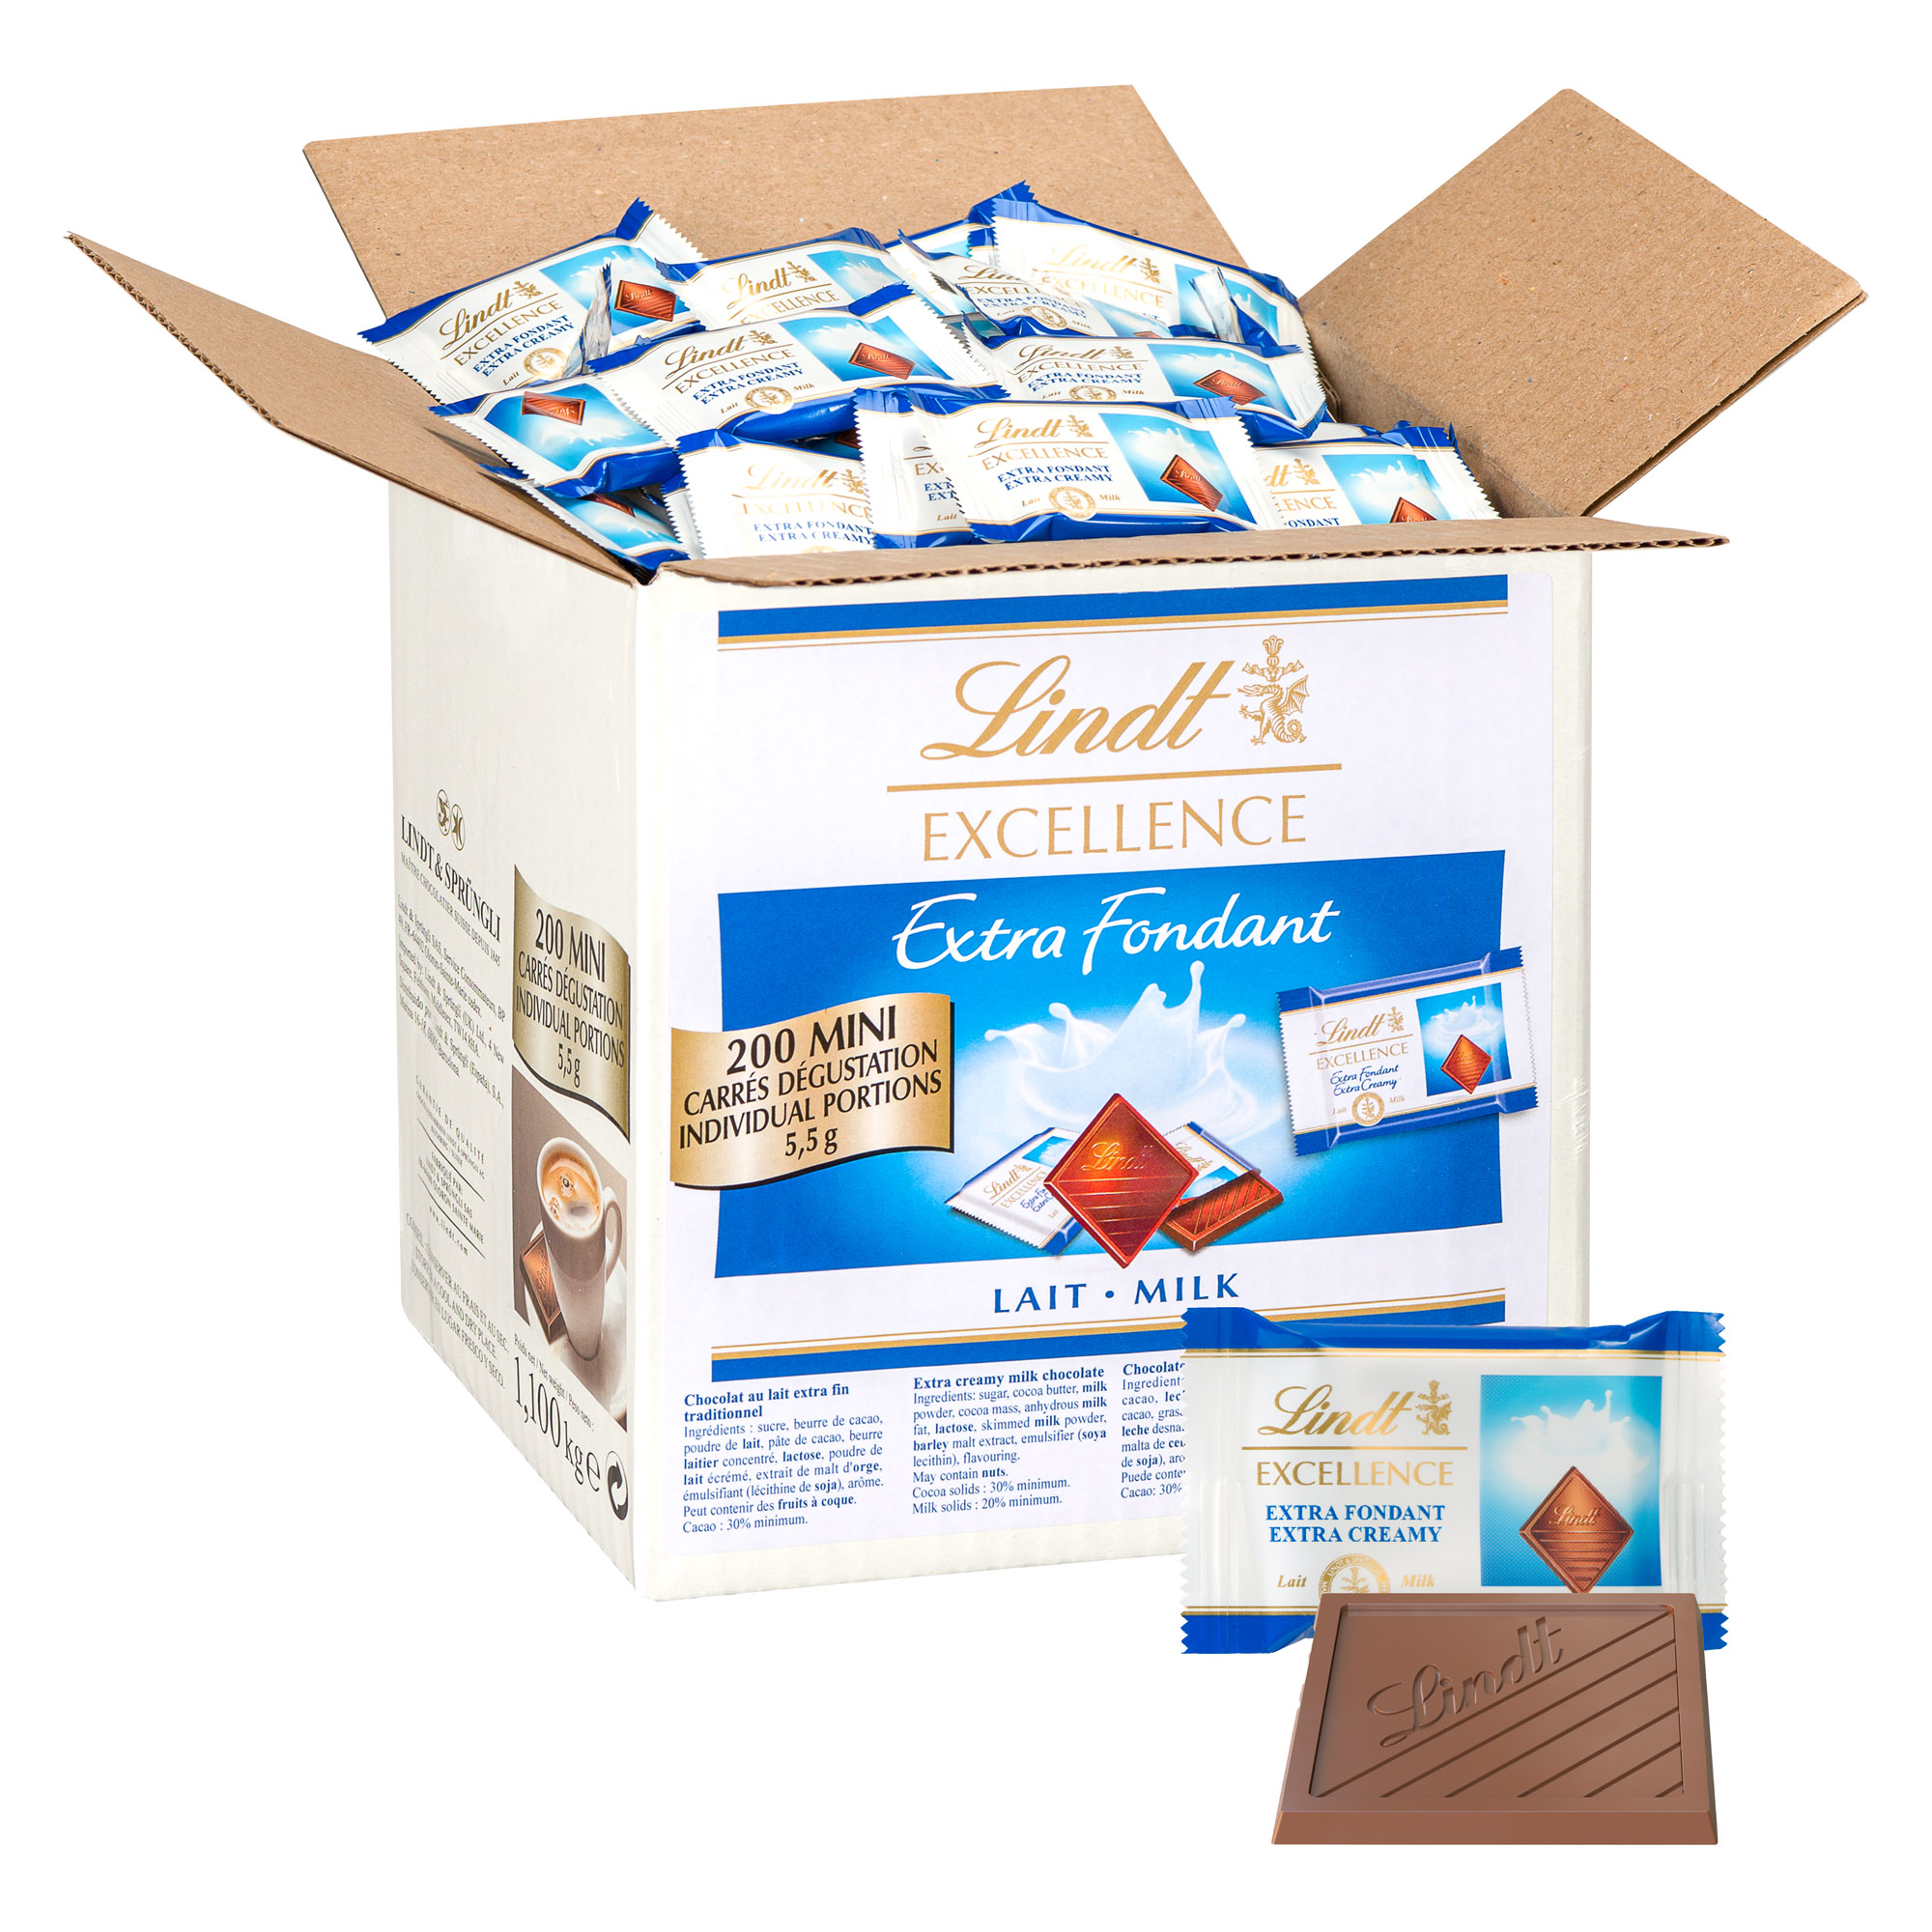 Chocolats au lait Excellence Lindt, paquet de 200 mini - Chocolat